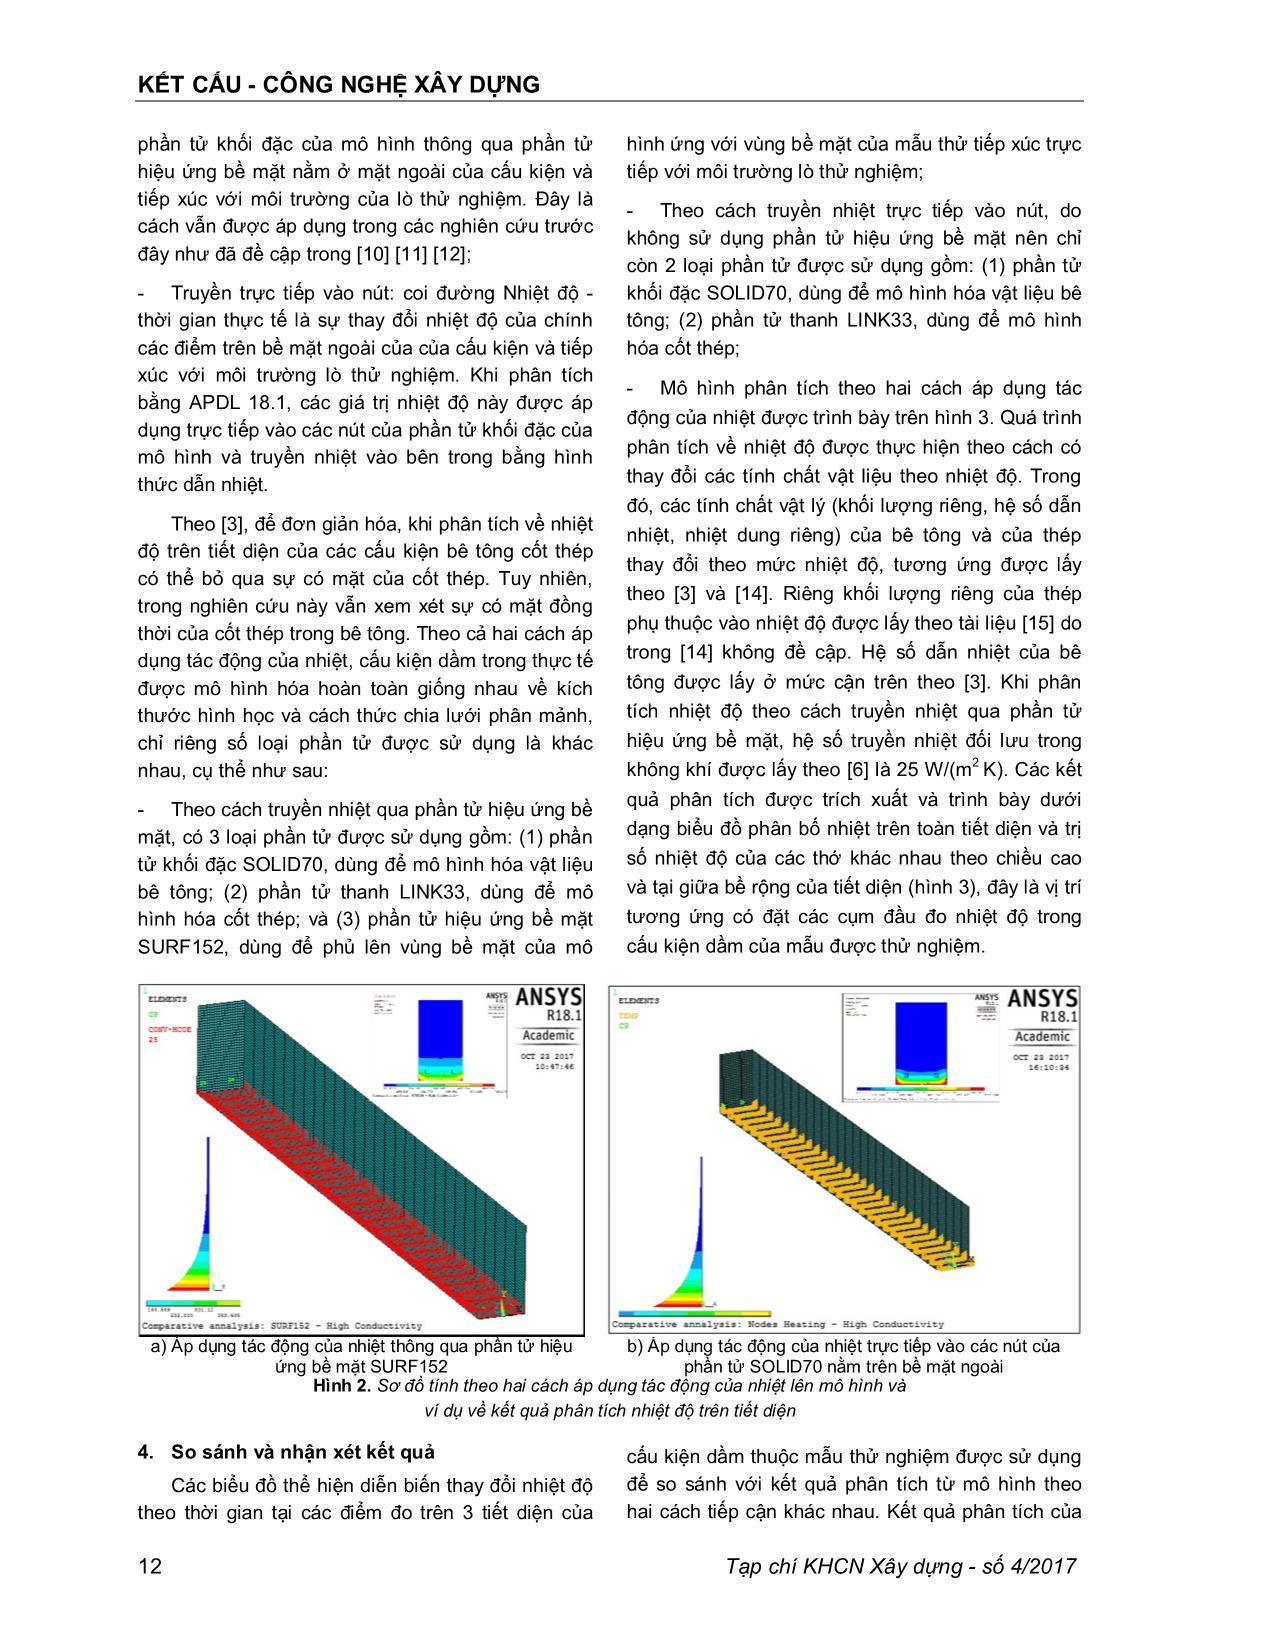 Dầm bê tông cốt thép chịu tác động của lửa - Lựa chọn phần tử cho mô hình nhiệt học trong Ansys trang 4